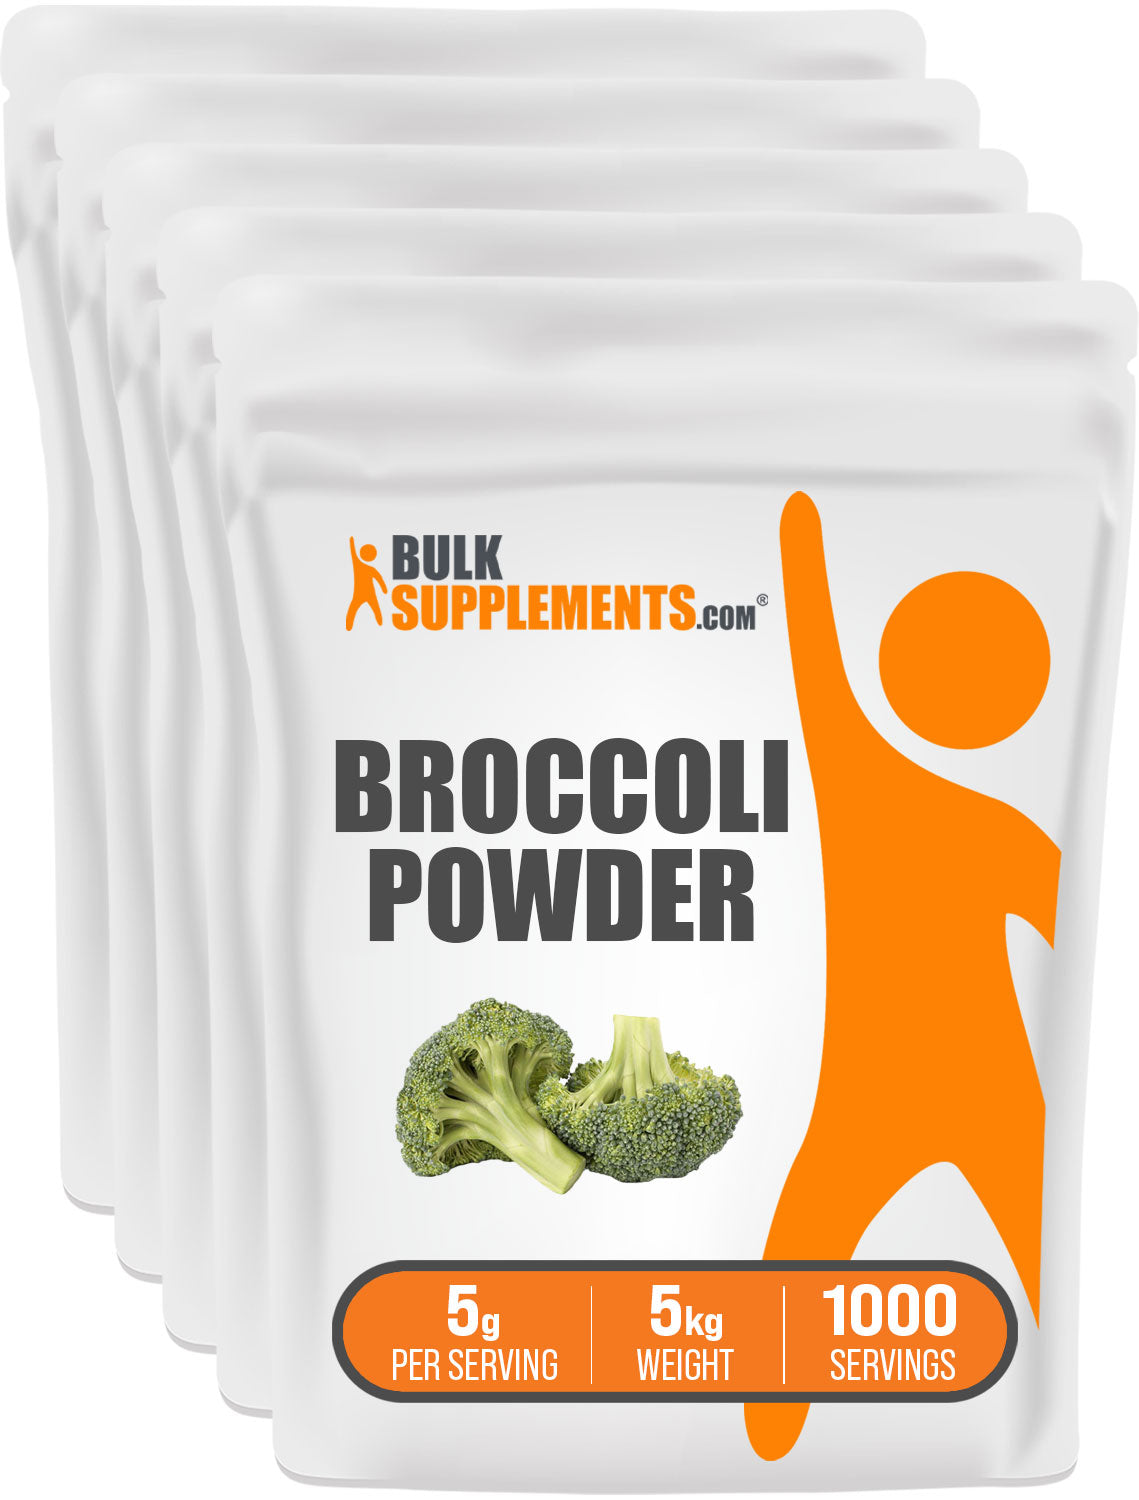 5kg of broccoli powder